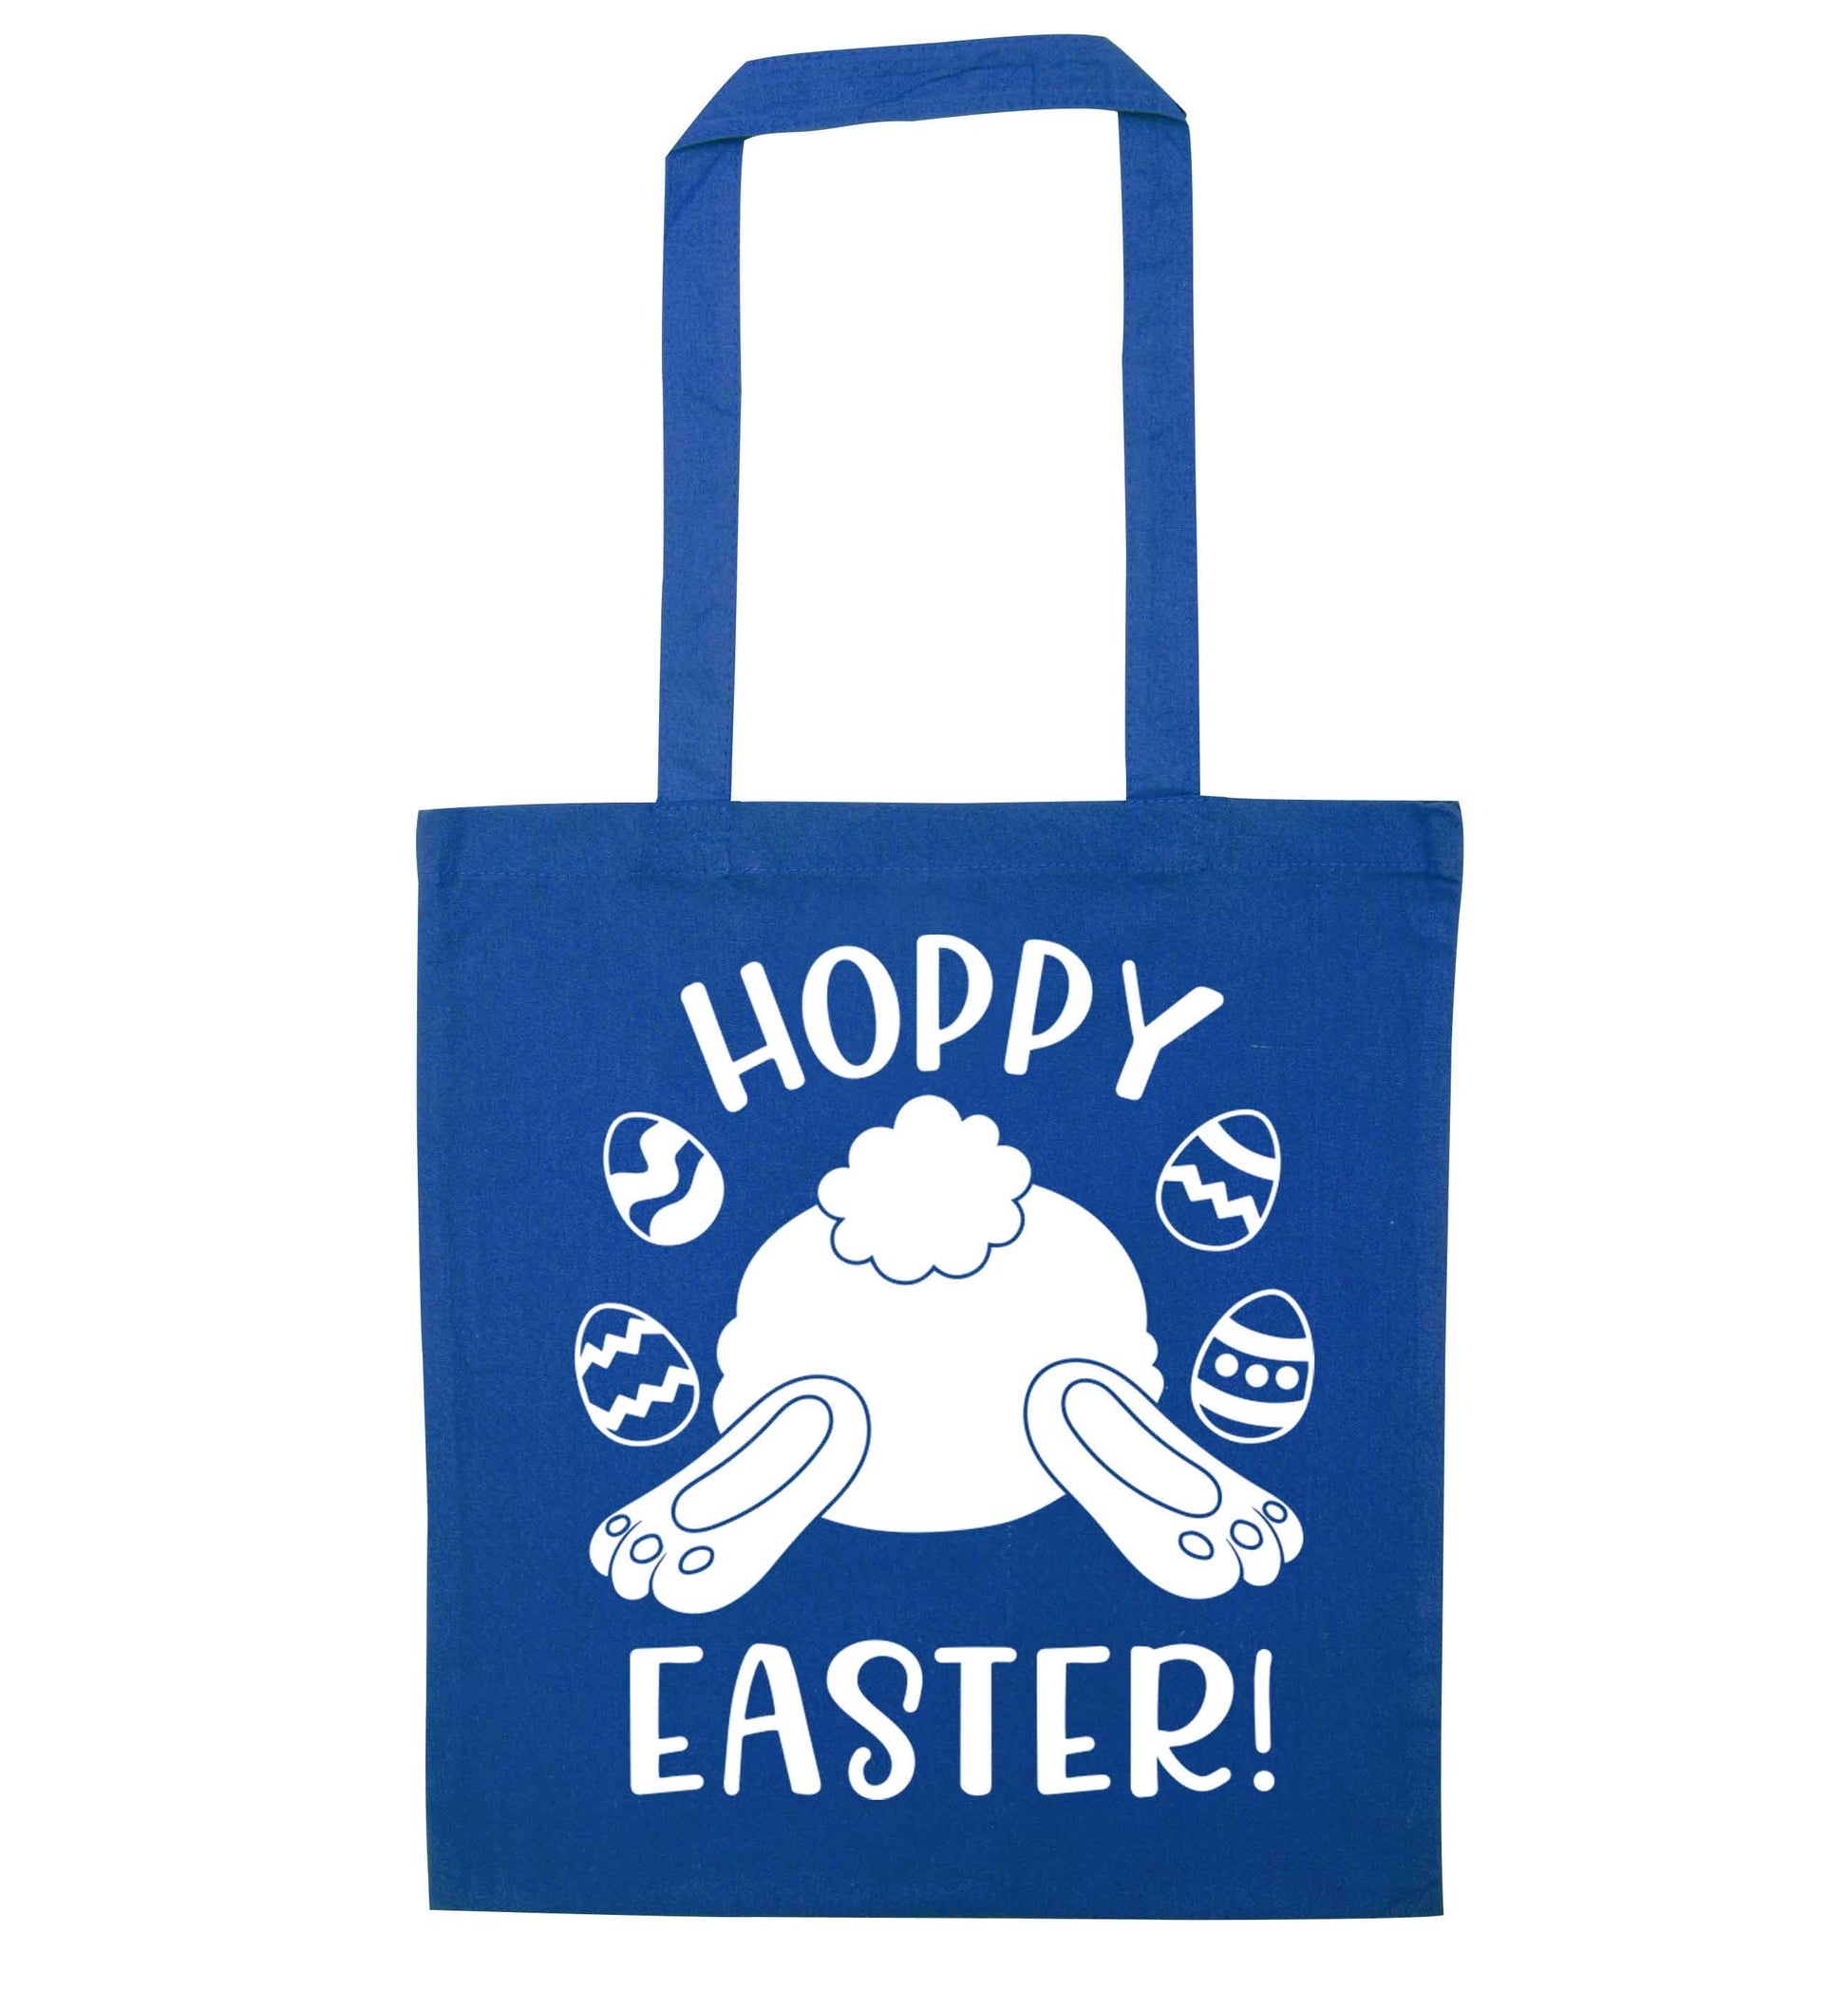 Hoppy Easter blue tote bag